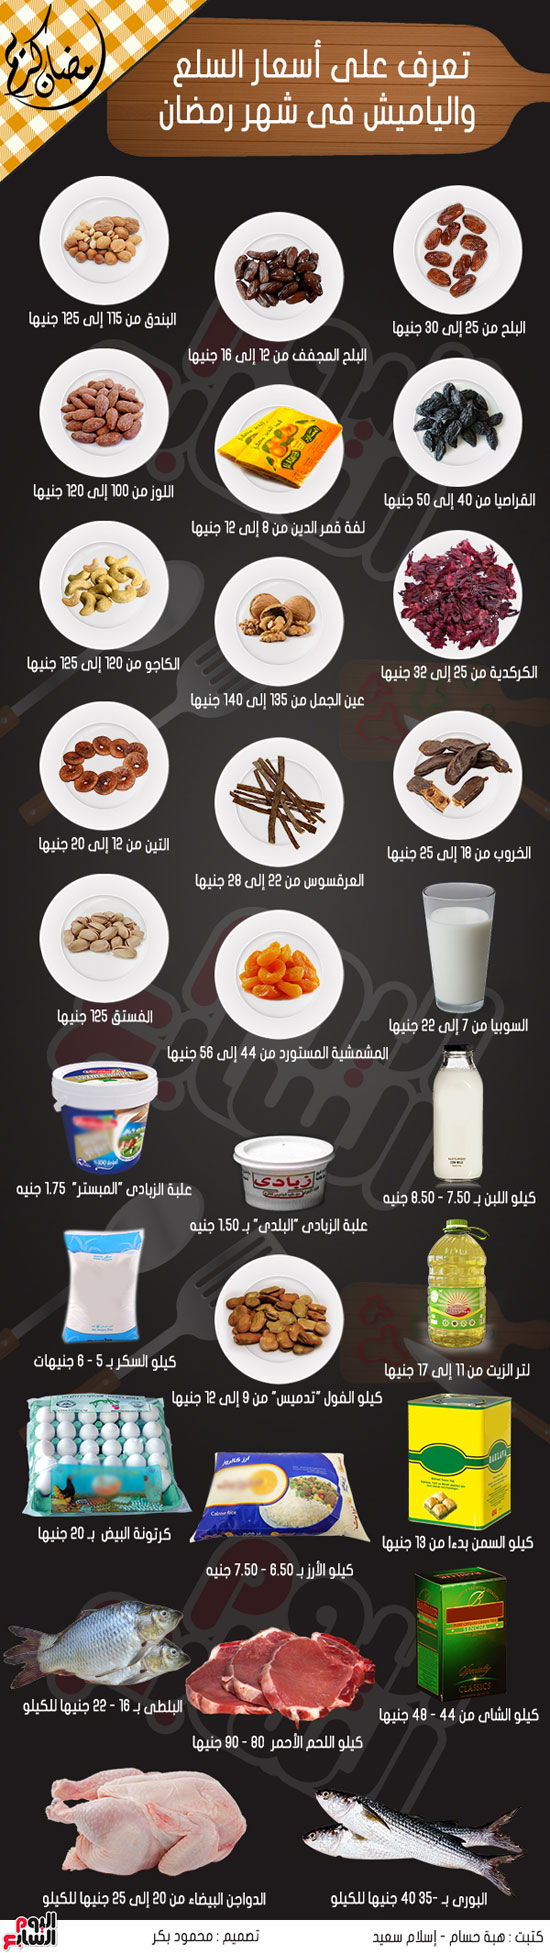 إنفوجراف أسعار السلع والياميش فى شهر رمضان